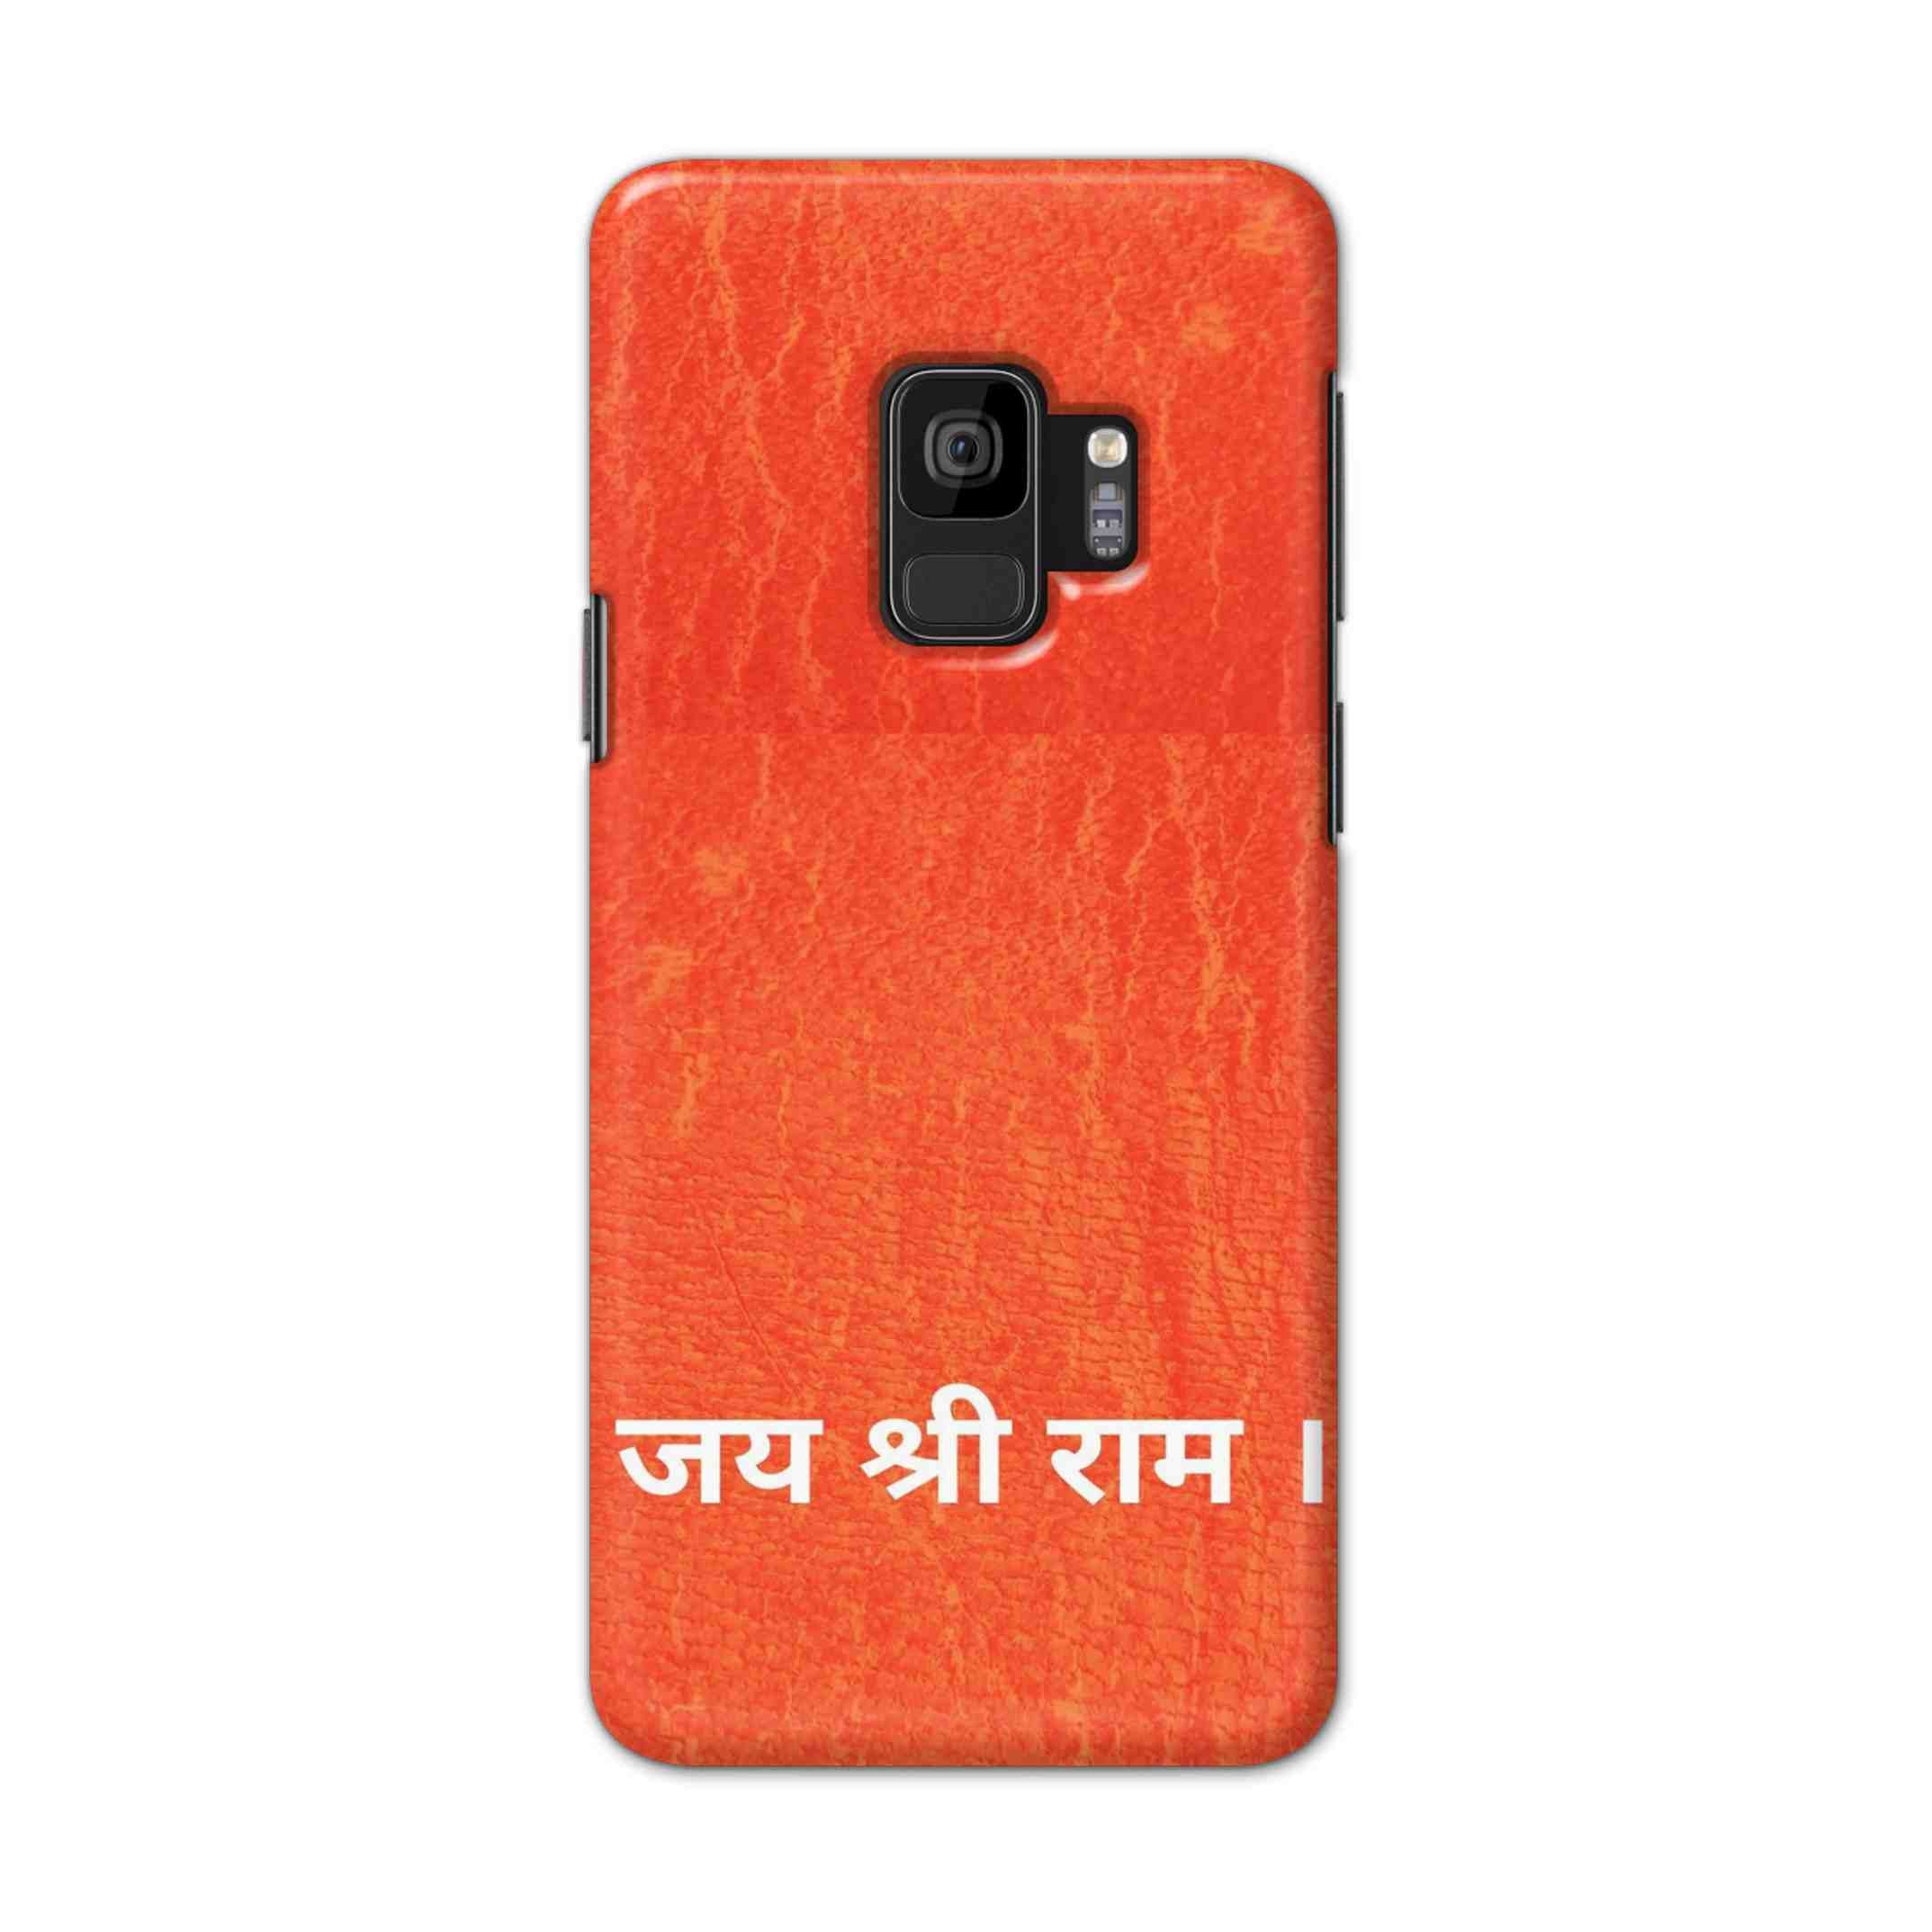 Buy Jai Shree Ram Hard Back Mobile Phone Case Cover For Samsung S9 Online